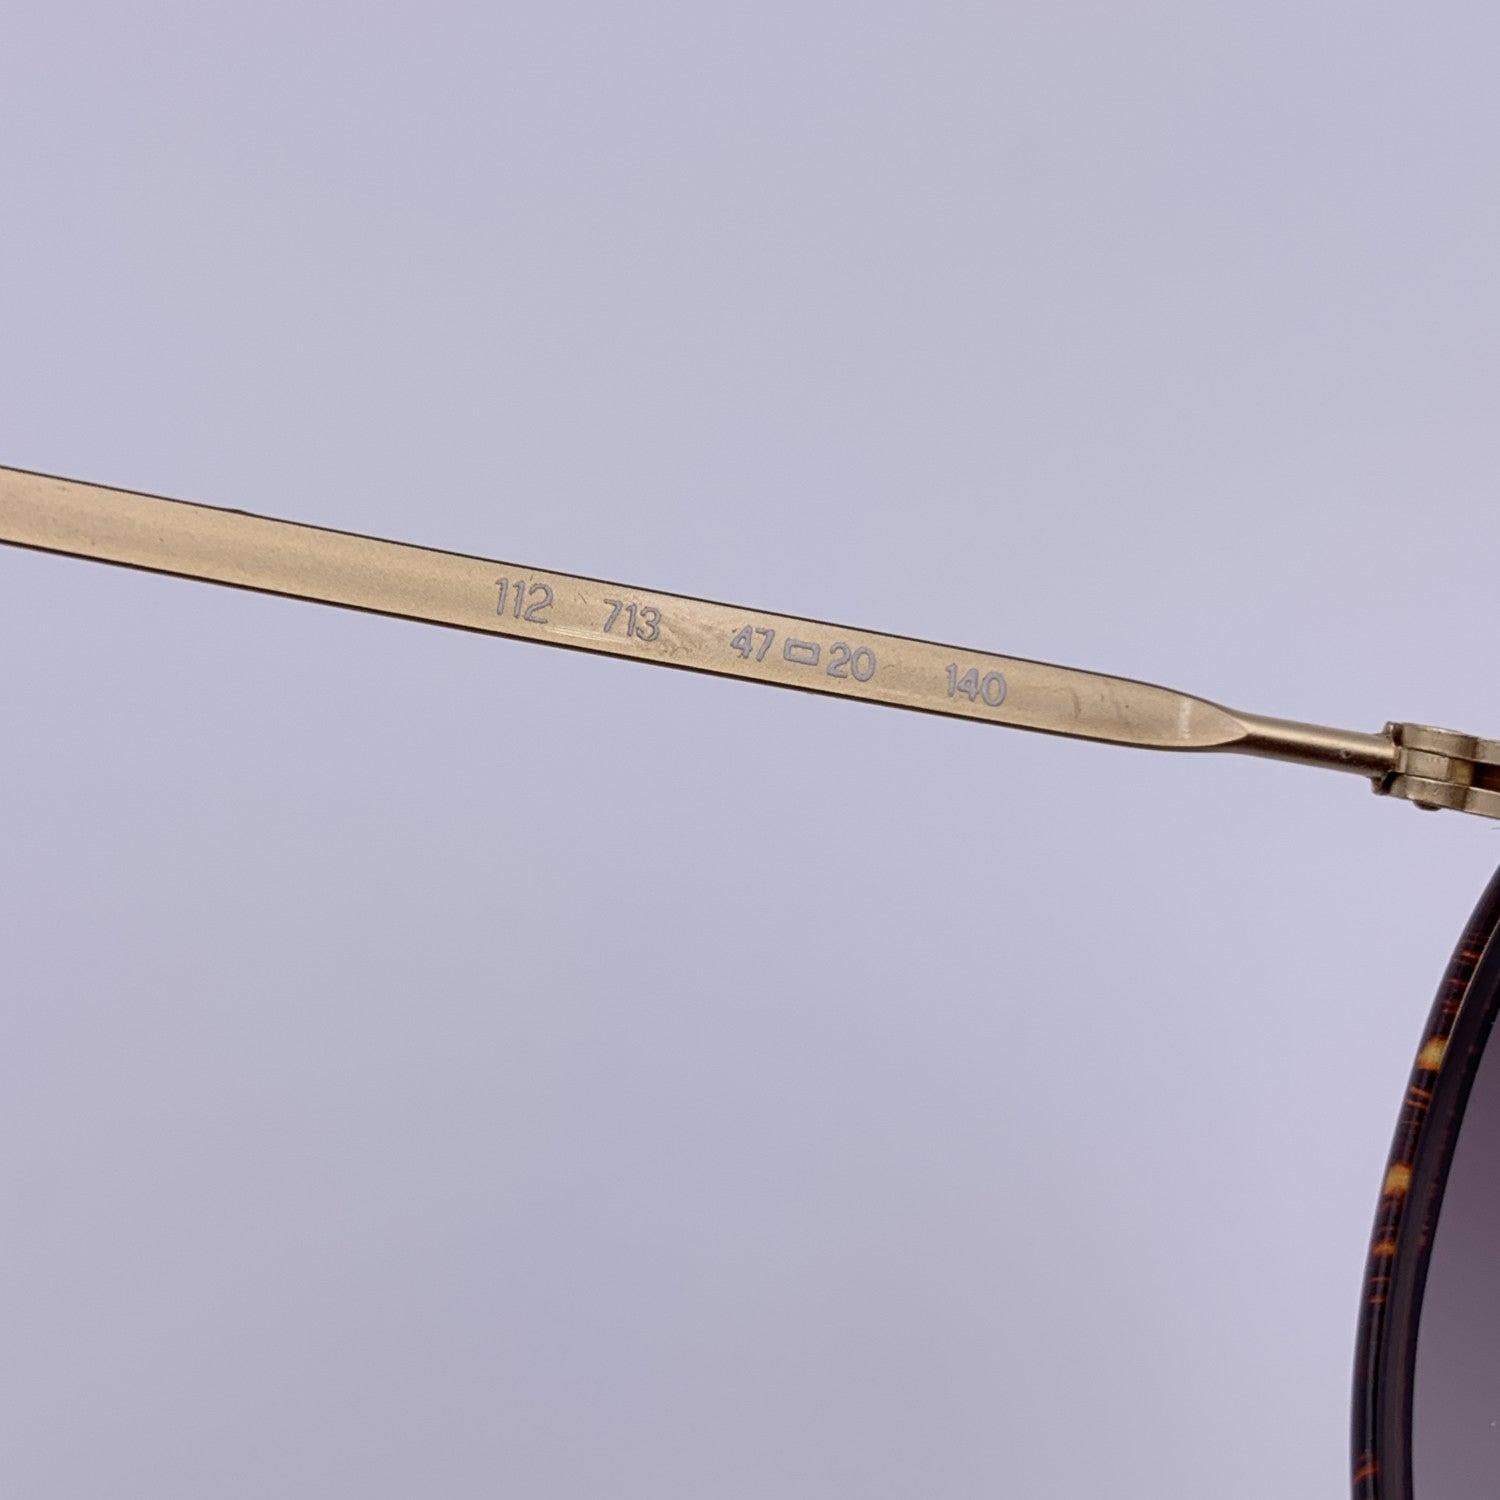 Giorgio Armani Vintage Round Sunglasses 112 713 Unisex 47/20 140mm In Excellent Condition In Rome, Rome